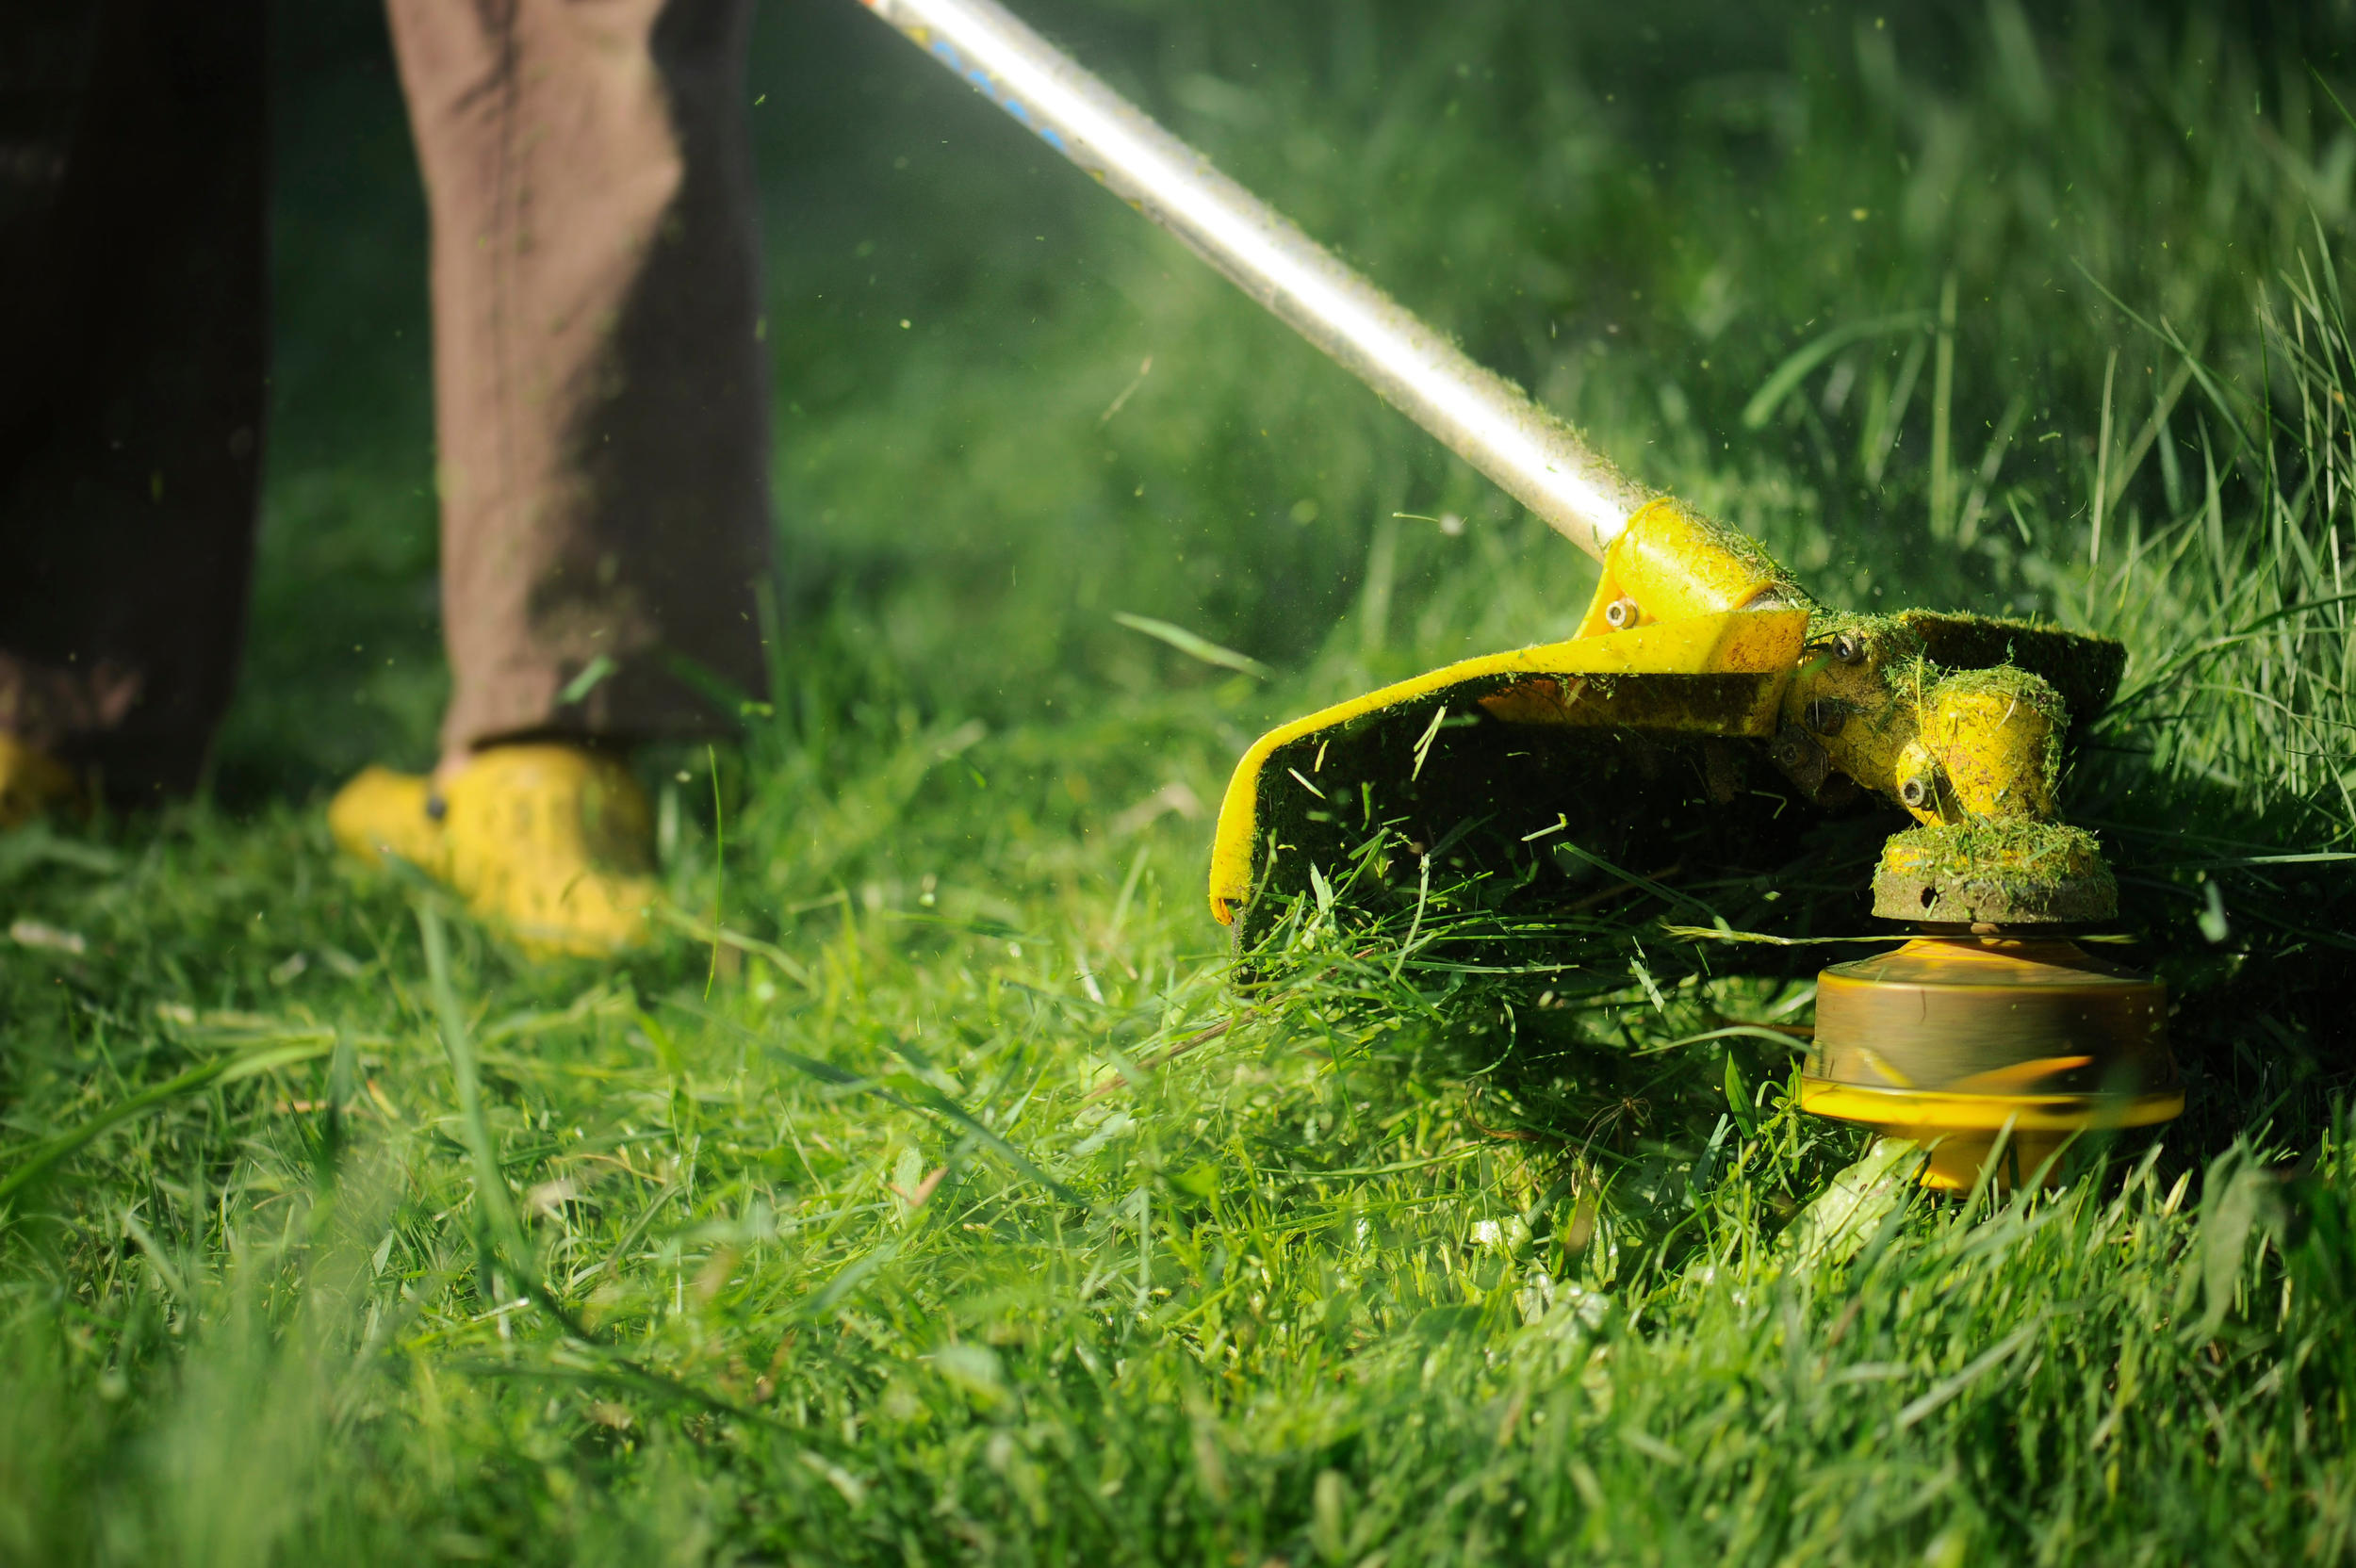 Как правильно стричь газон газонокосилкой: можно ли косить мокрую или высокую траву